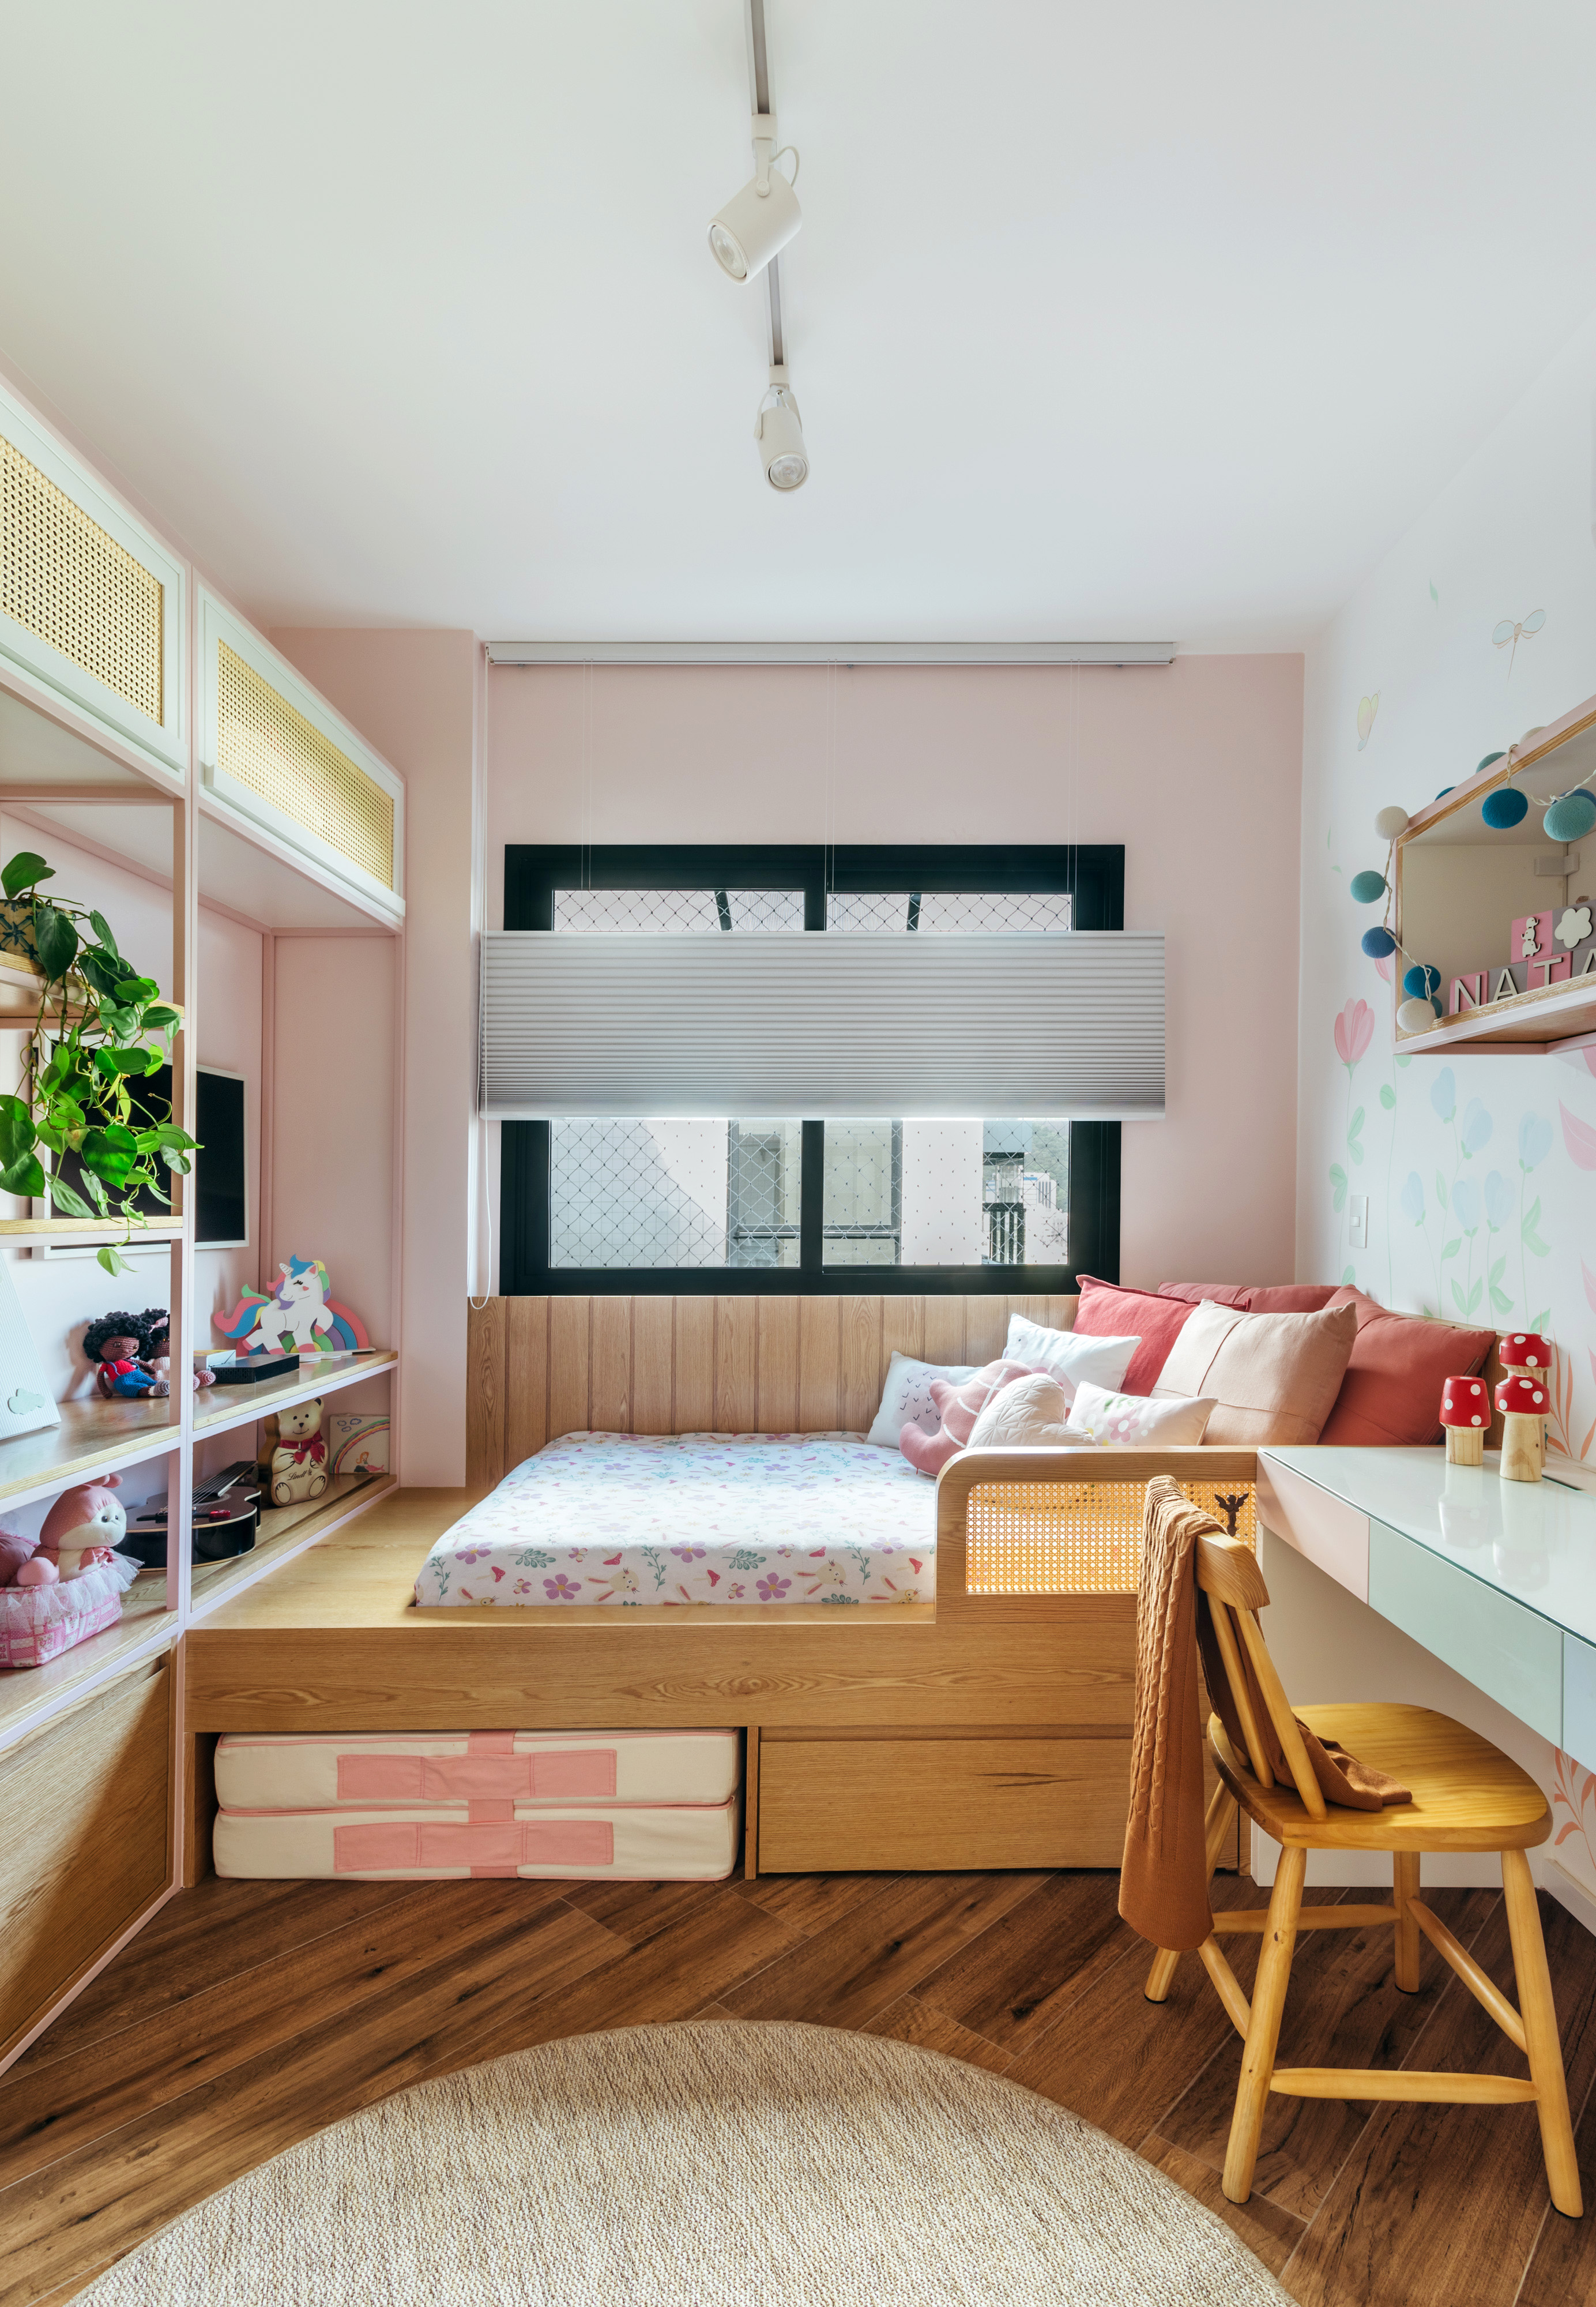 Quarto infantil com pintura na parede e cama de solteiro em plataforma de madeira.